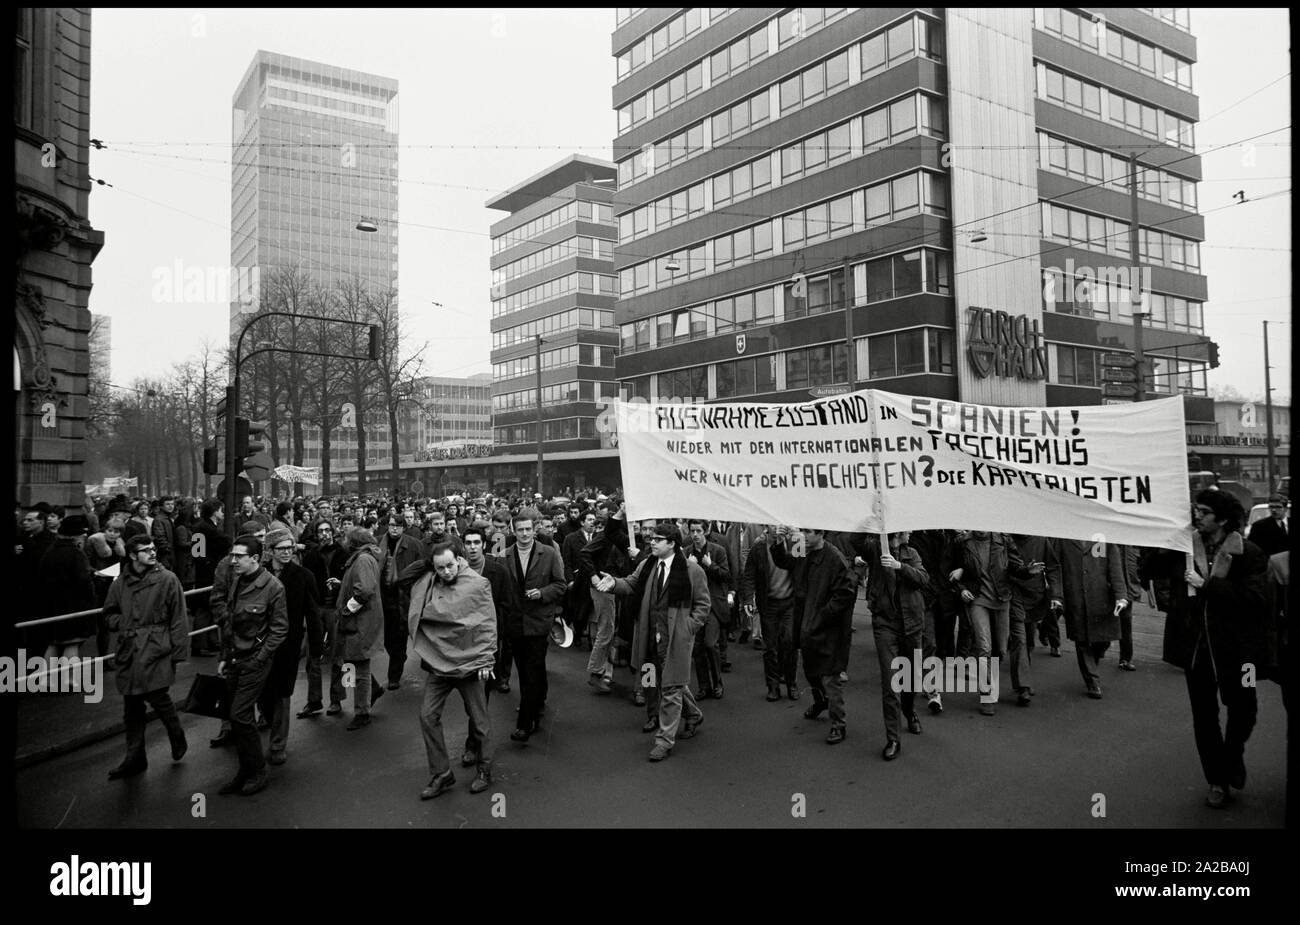 L'Allemagne. Francfort. 1. Février 1969. Environ 1000 étudiants de l'Université de Francfort rallye contre l'état d'urgence en Espagne. Auteur : Max Scheler/SZ Photo. Banque D'Images